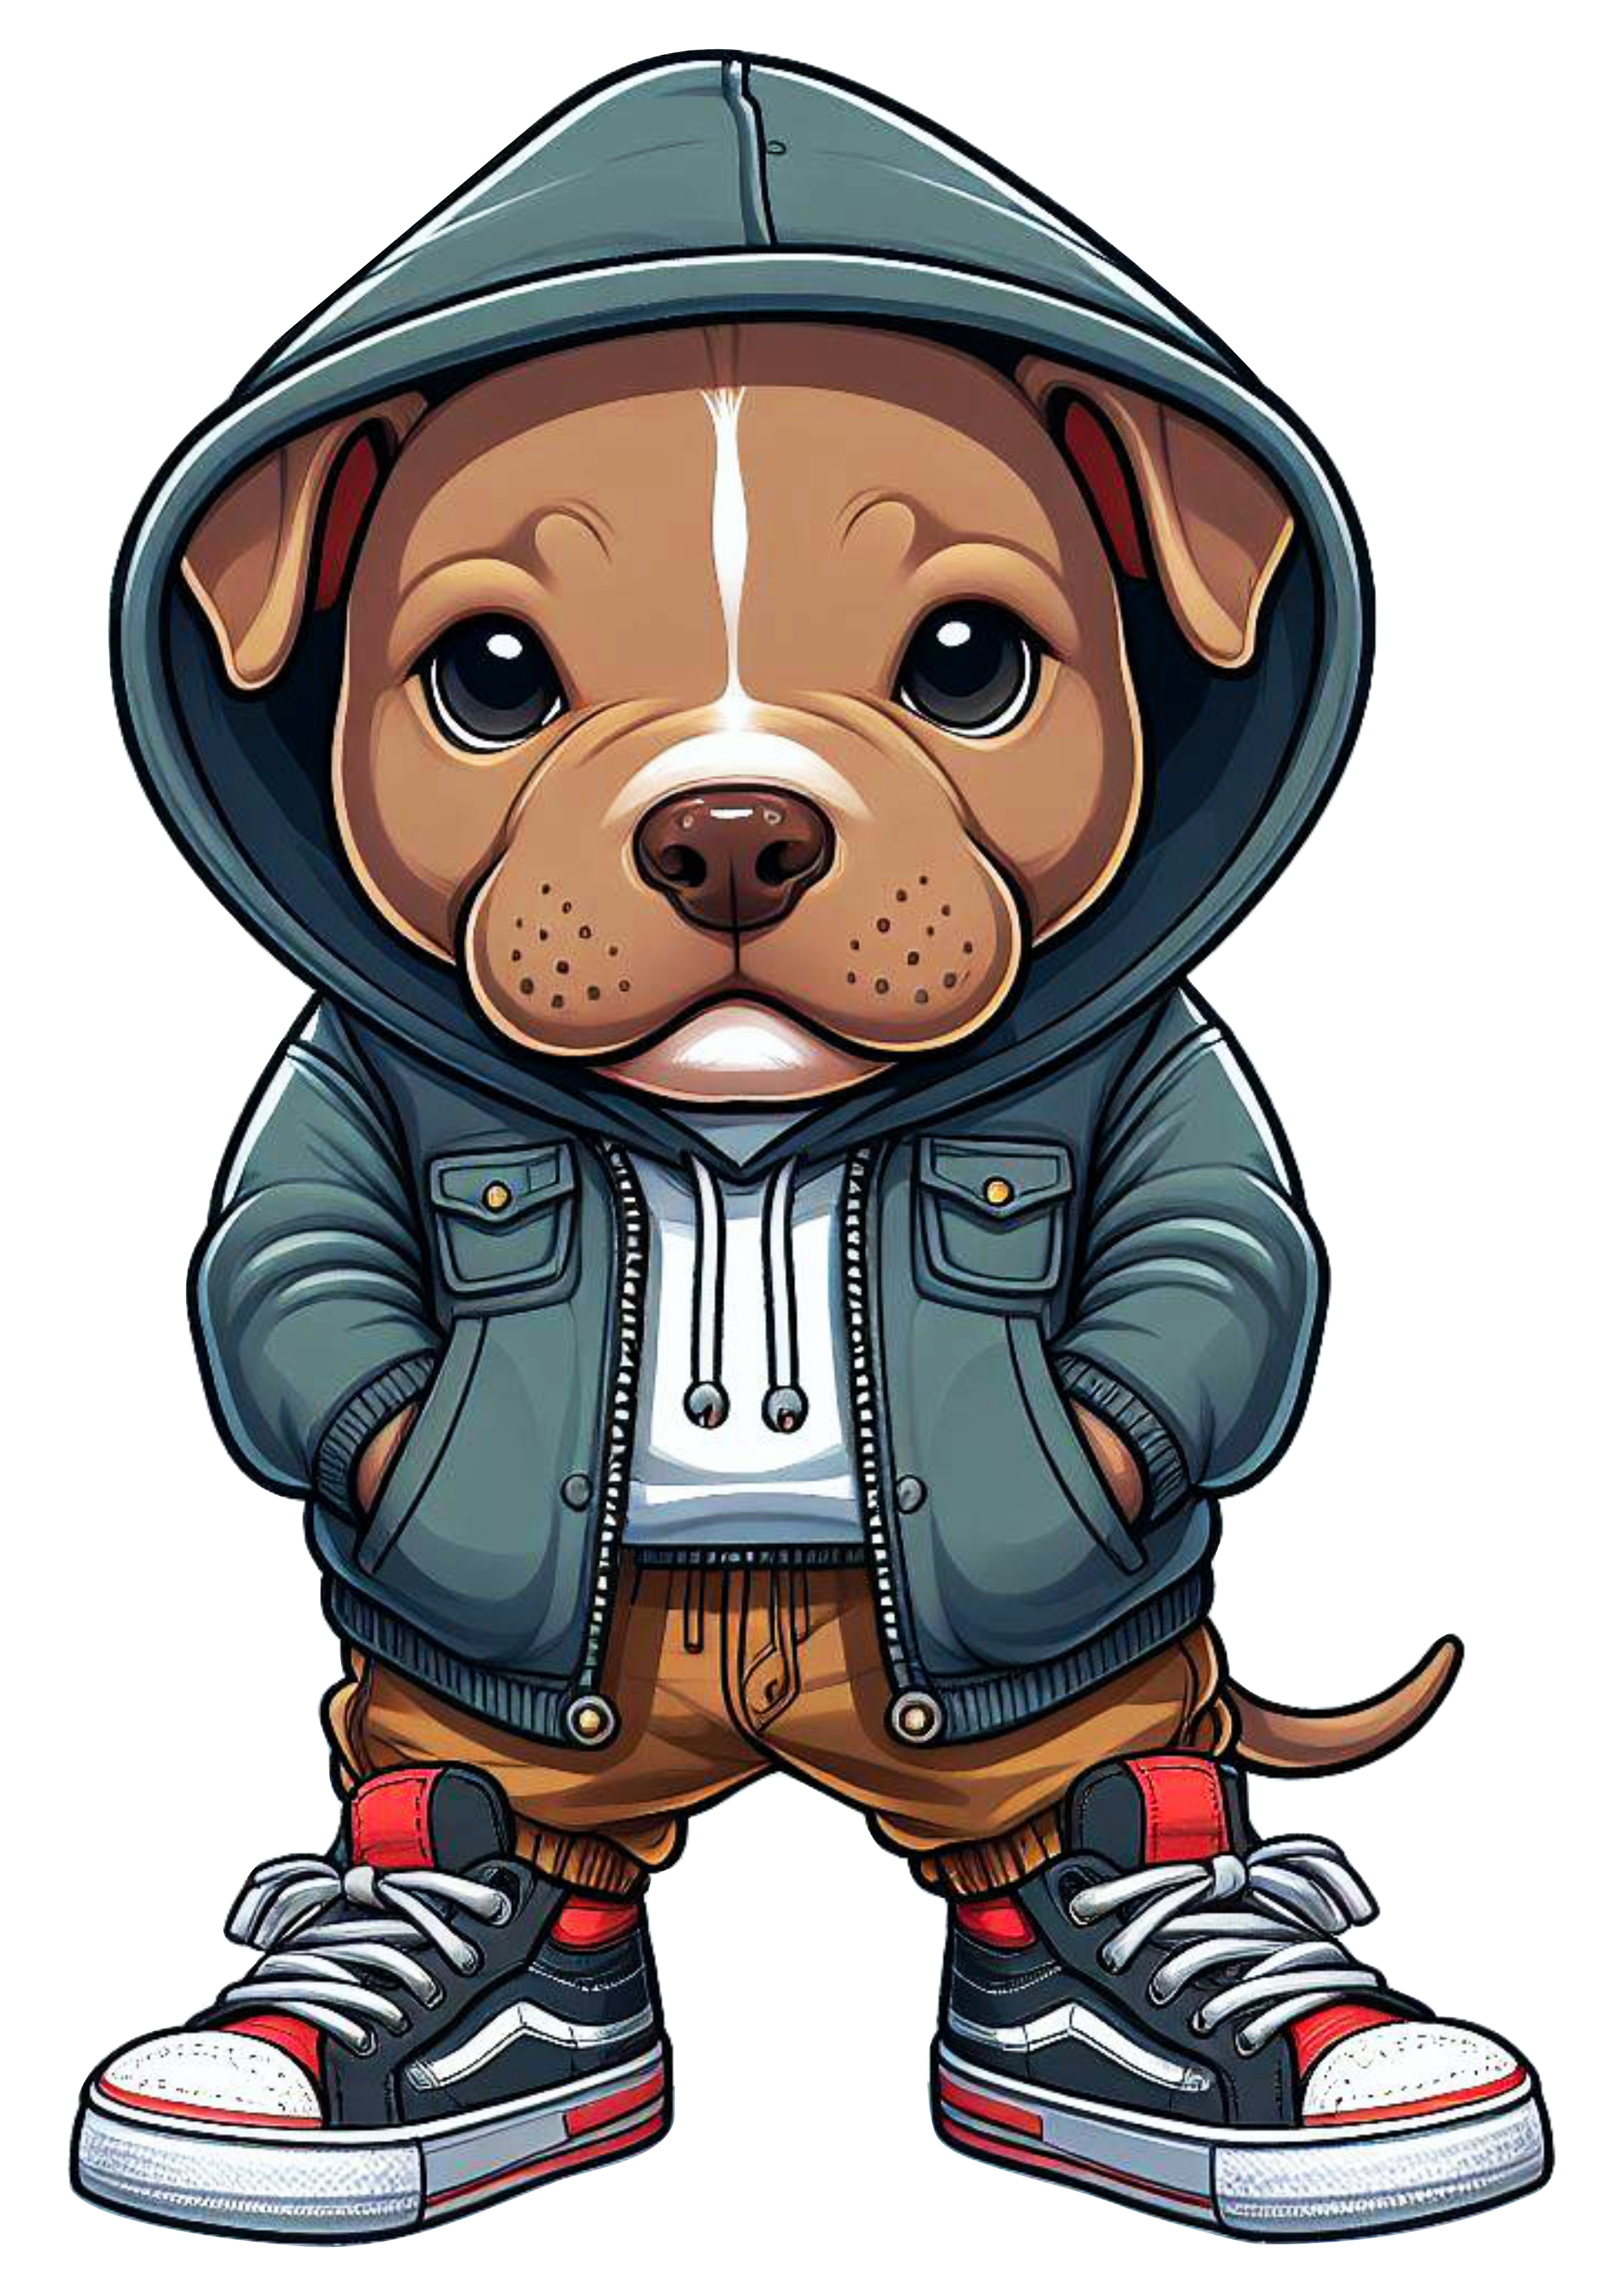 Pitbull cachorrinho de roupa de skatista desenho infantil blusão moletom png image ilustração